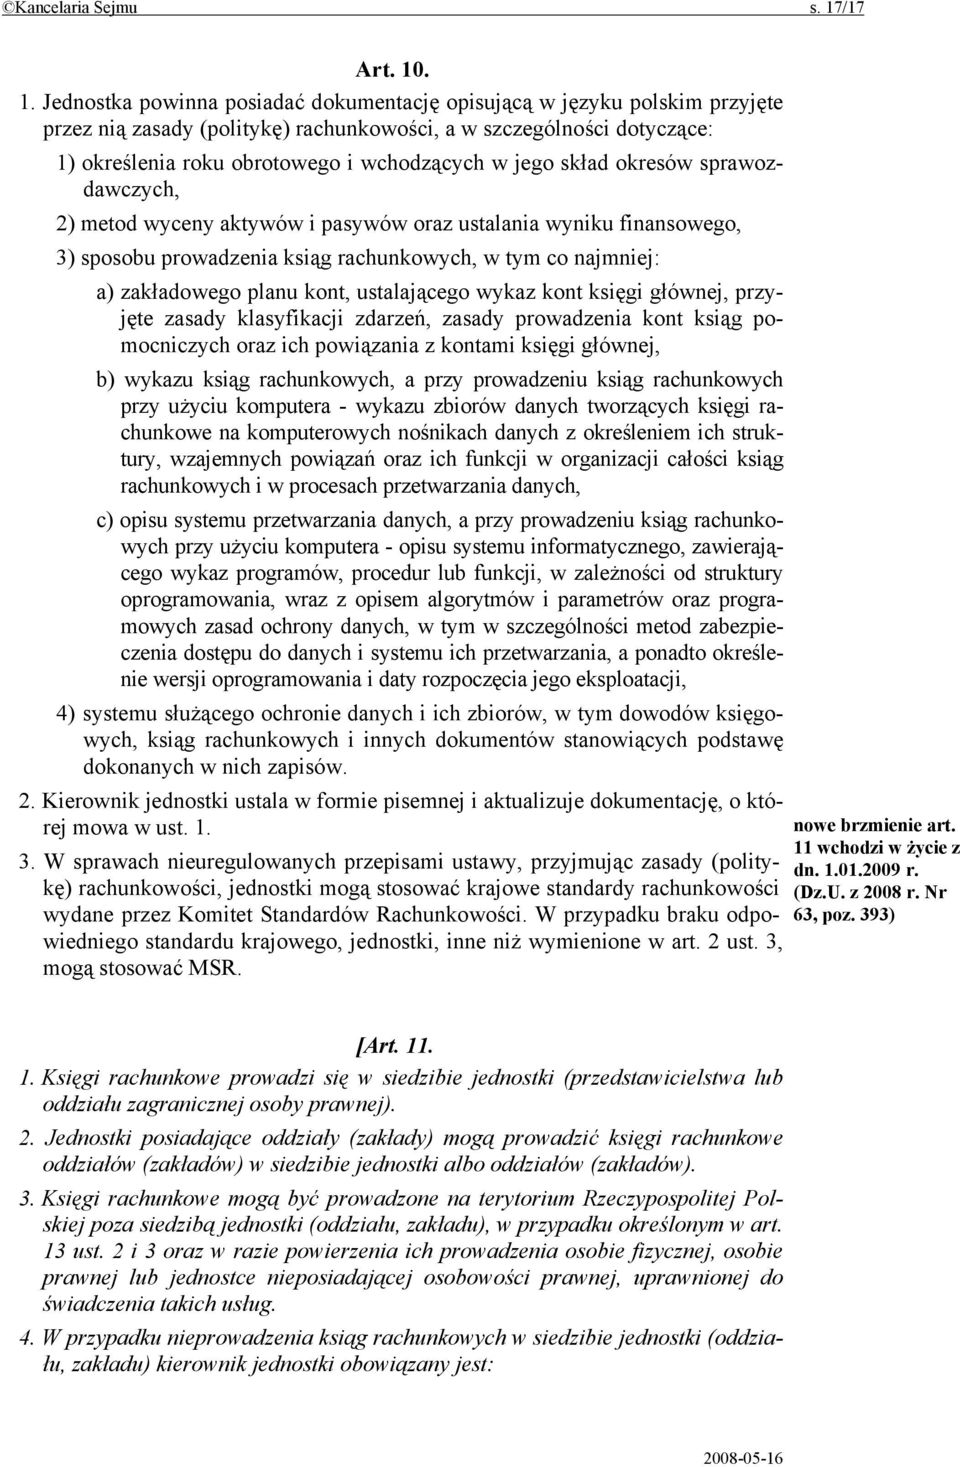 . 1. Jednostka powinna posiadać dokumentację opisującą w języku polskim przyjęte przez nią zasady (politykę) rachunkowości, a w szczególności dotyczące: 1) określenia roku obrotowego i wchodzących w